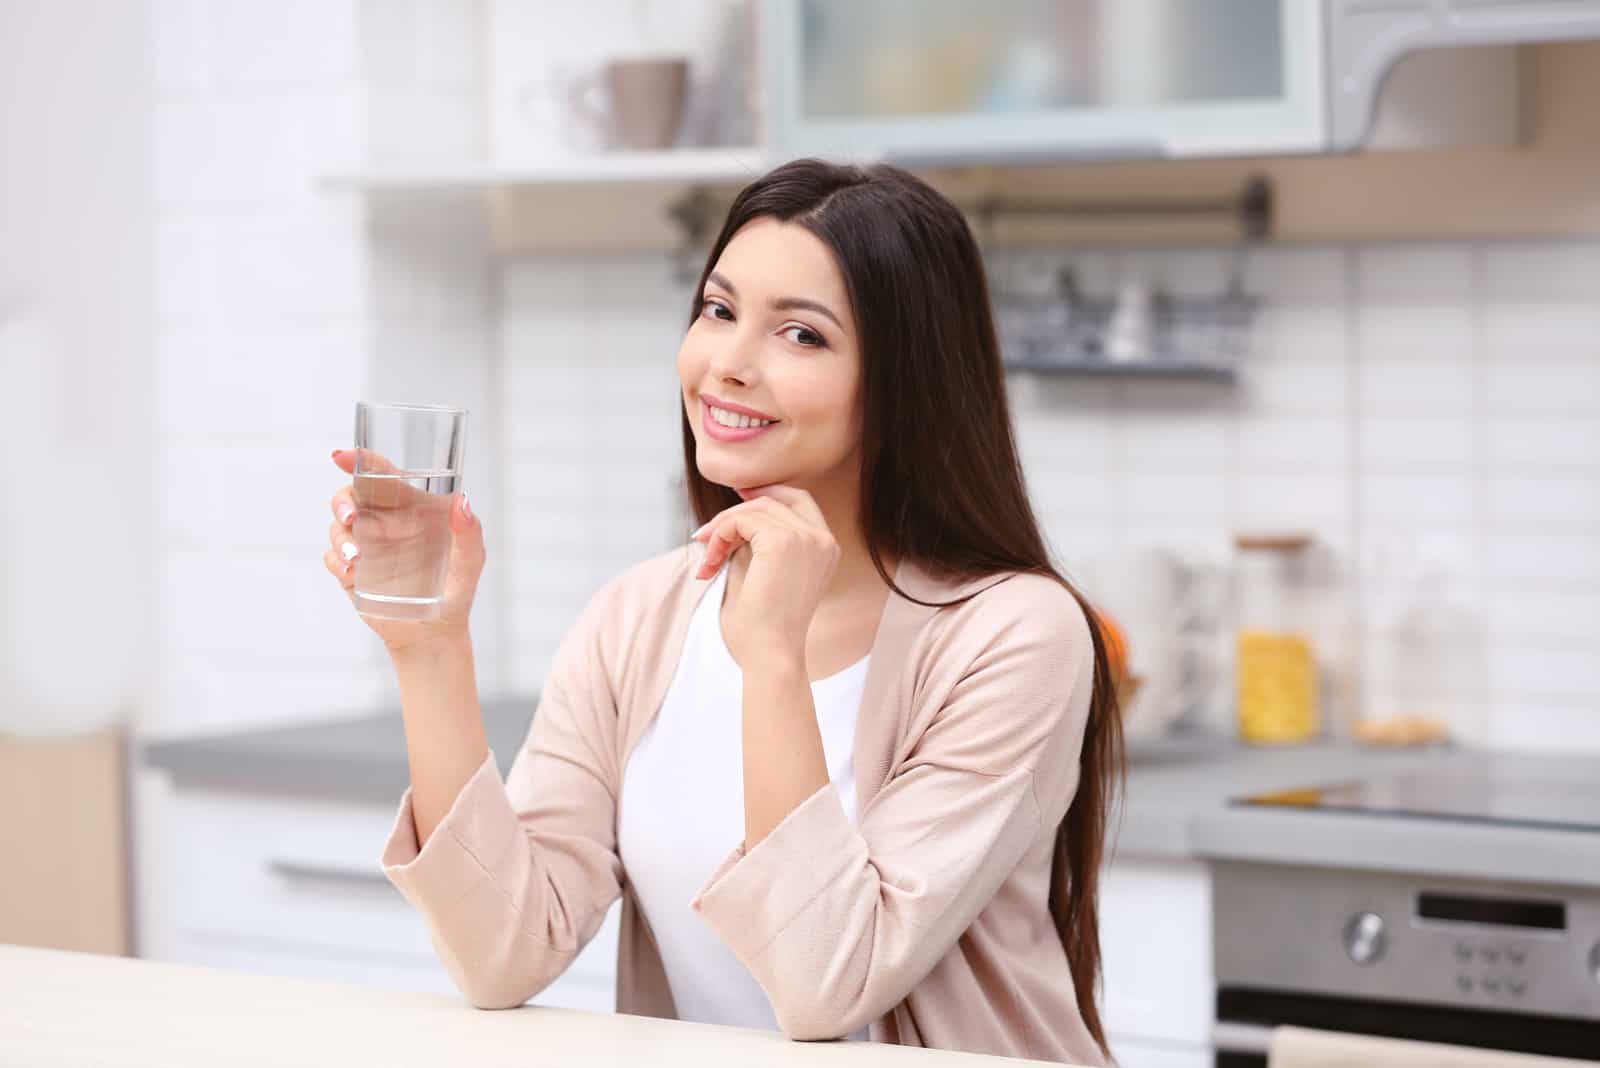 une femme aux longs cheveux noirs s'assoit et boit de l'eau